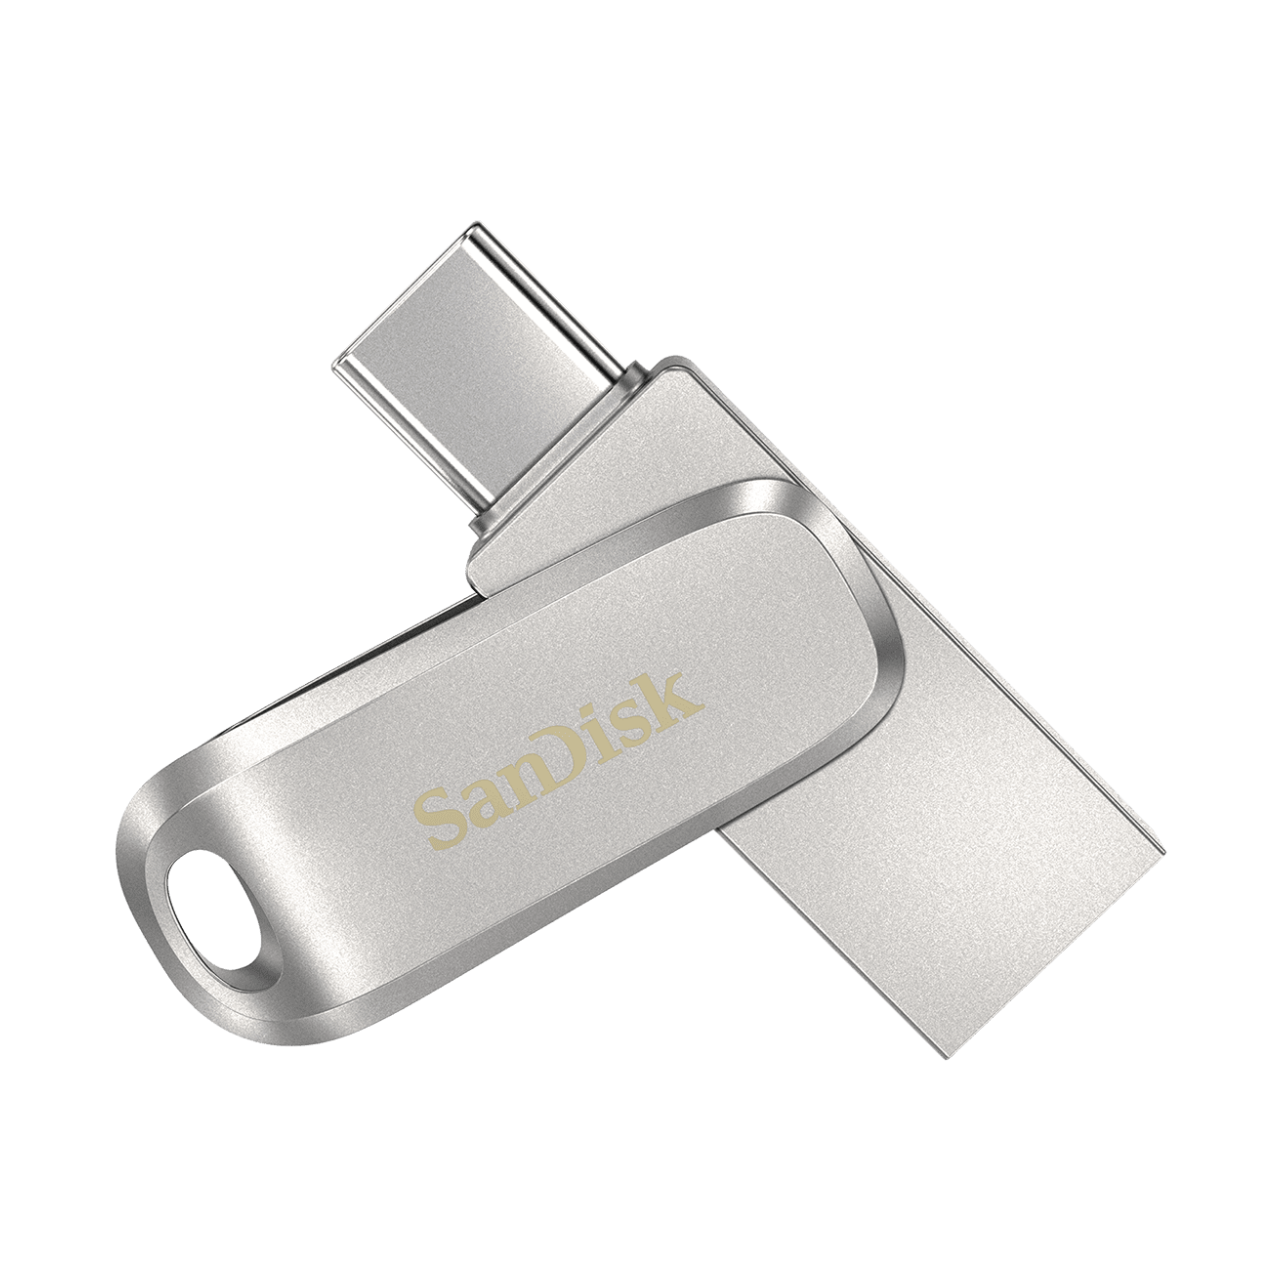 sandisk usb flash drive repair tool